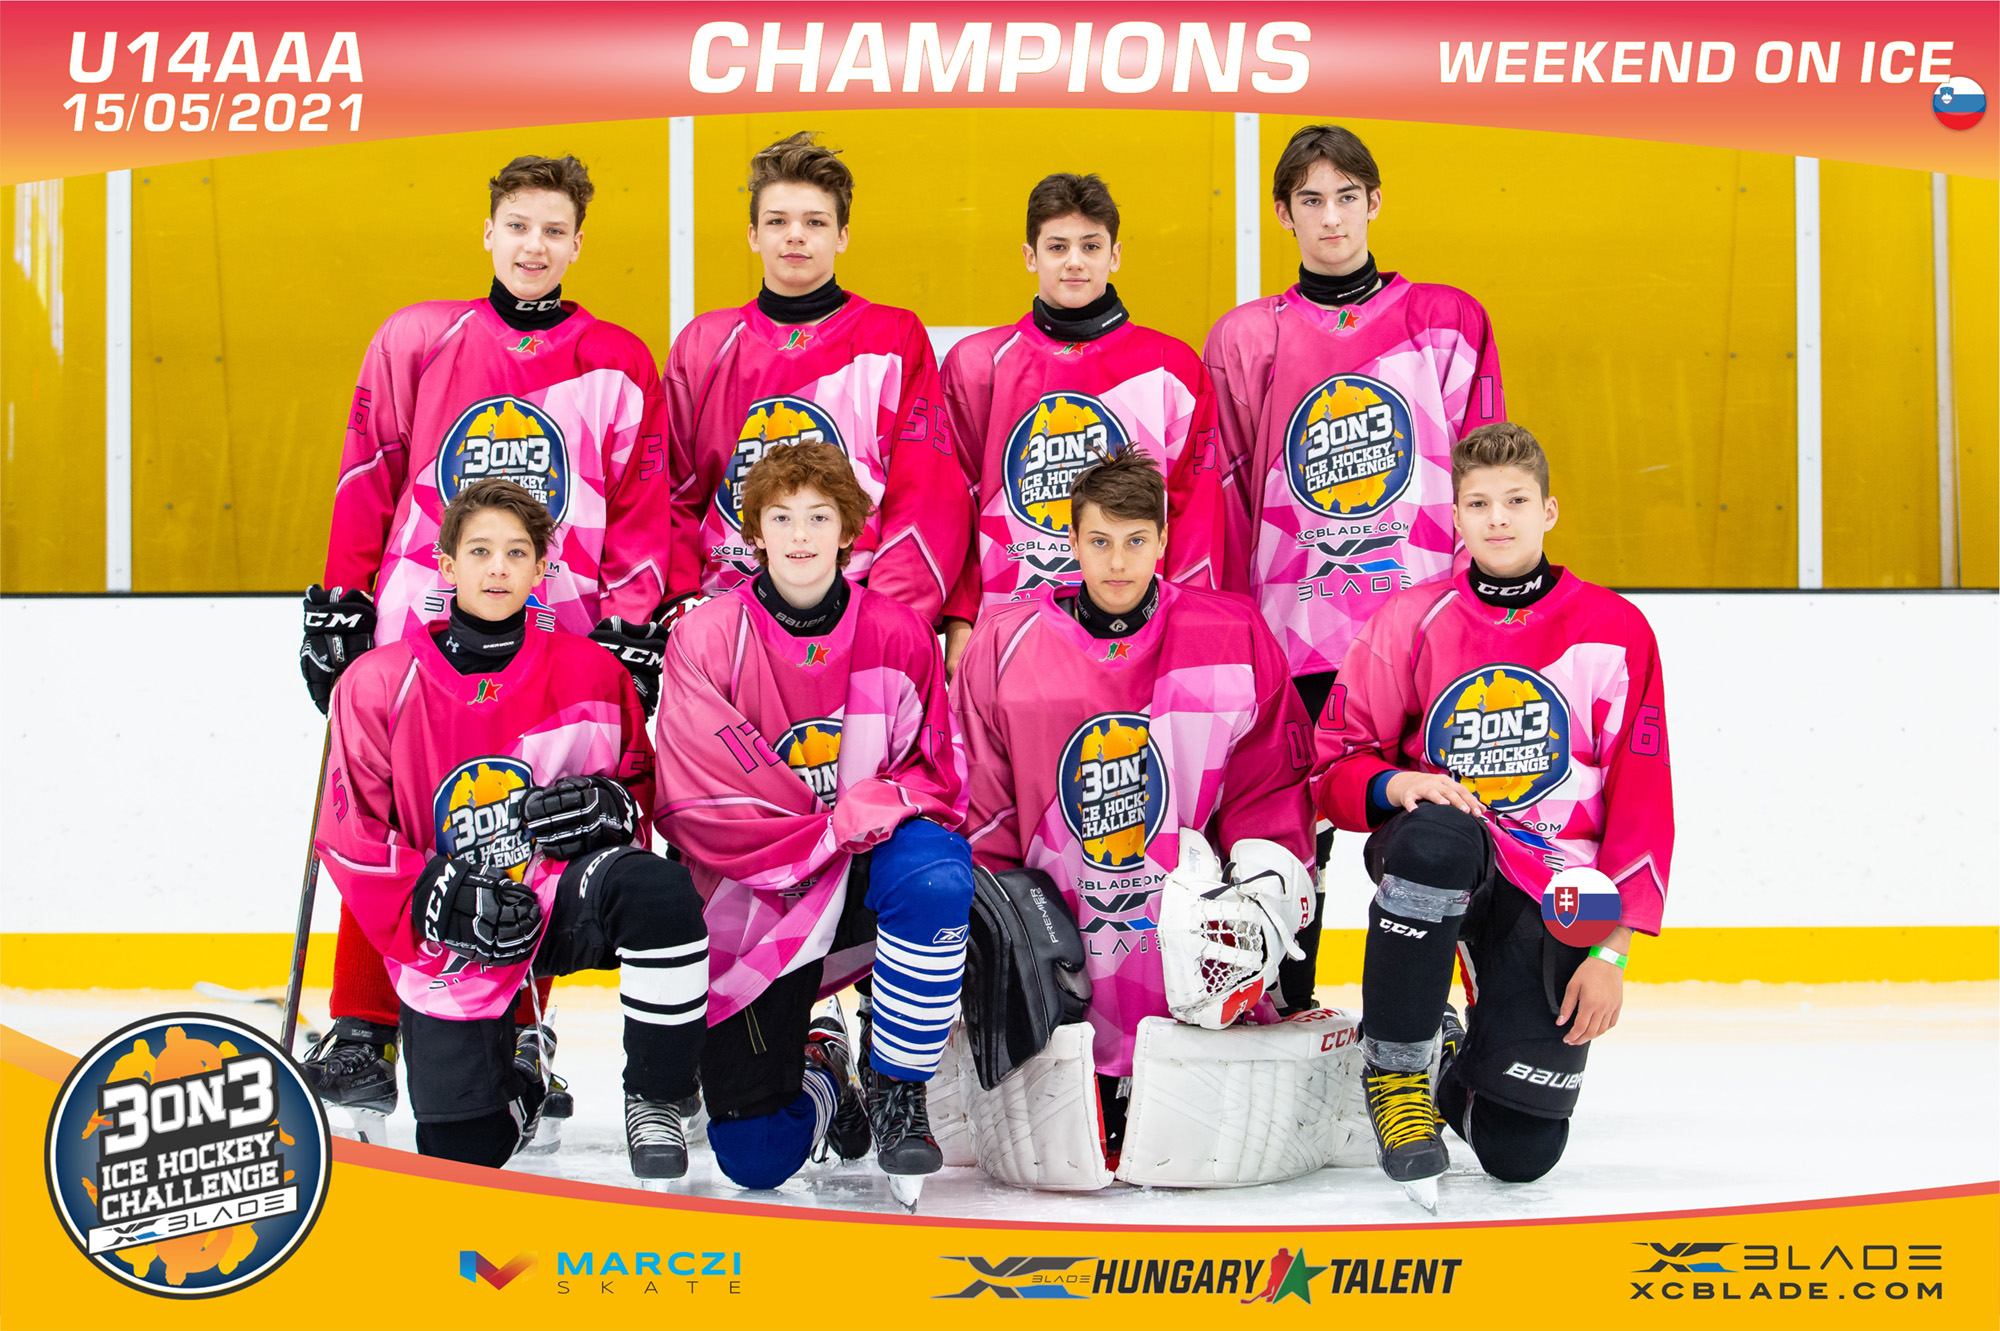 A szlovén Weekend on ICE csapata nyerte az U14AAA 3on3 Ice Hockey Challenge tornát